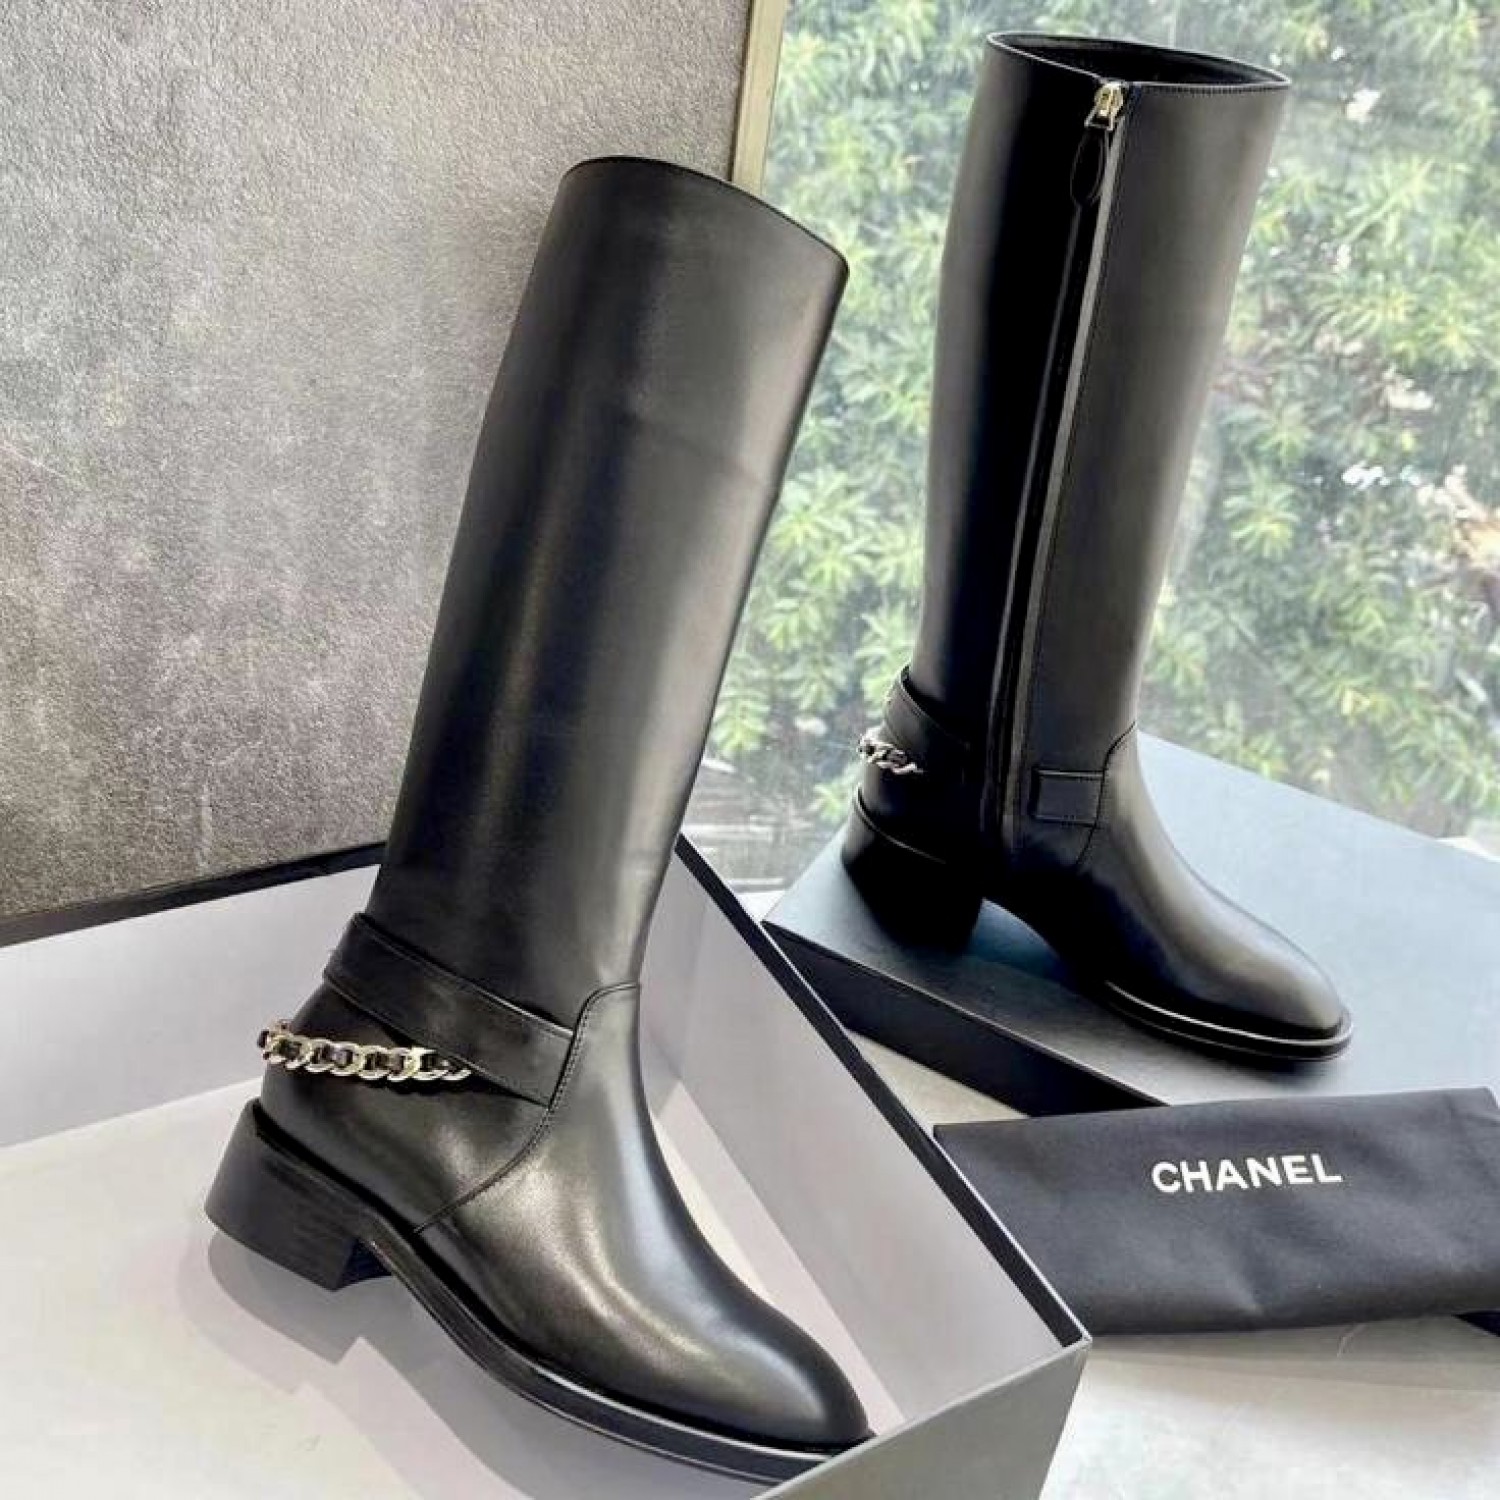 Кожаные сапоги Chanel PREMIUM качества